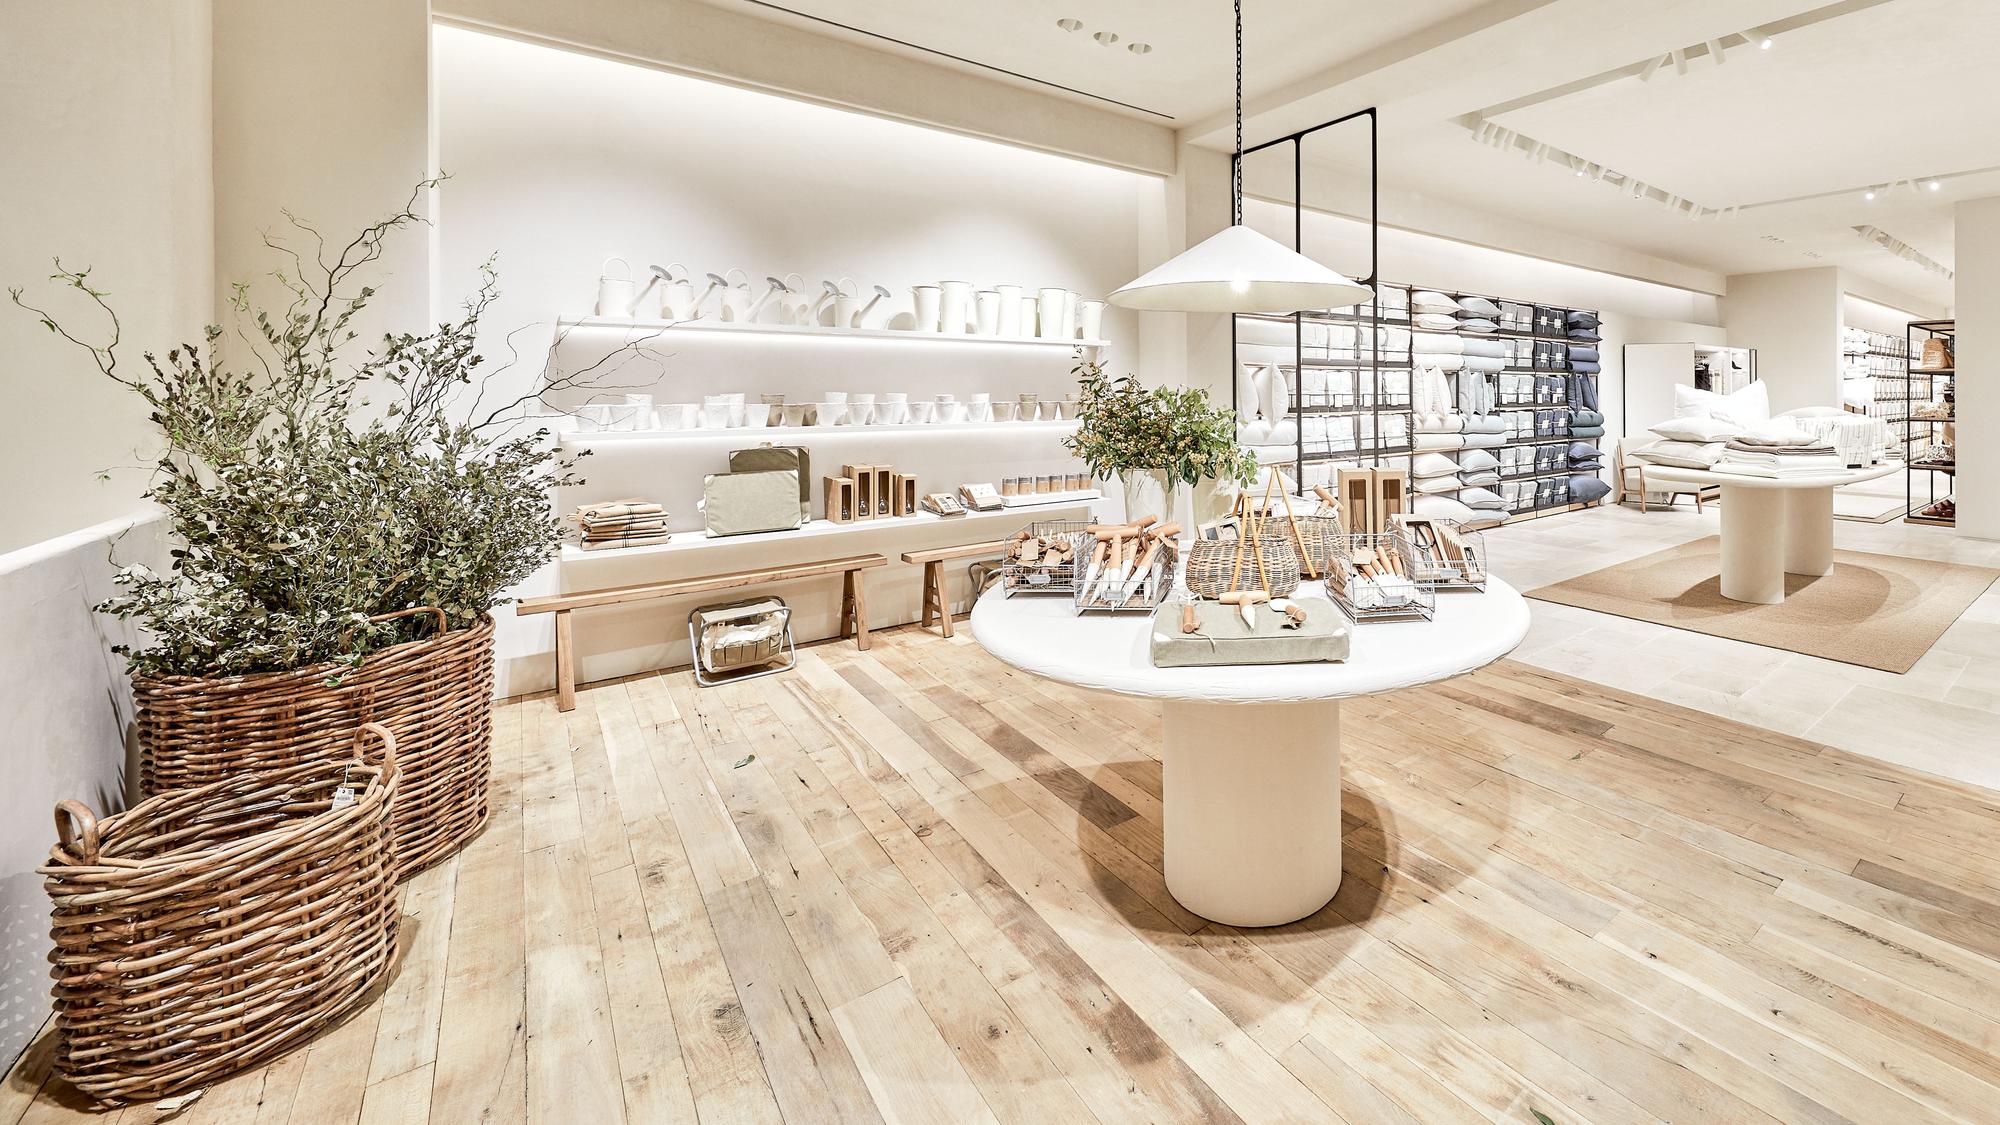 Zara abre nueva tienda para comprar online y recoger pedidos